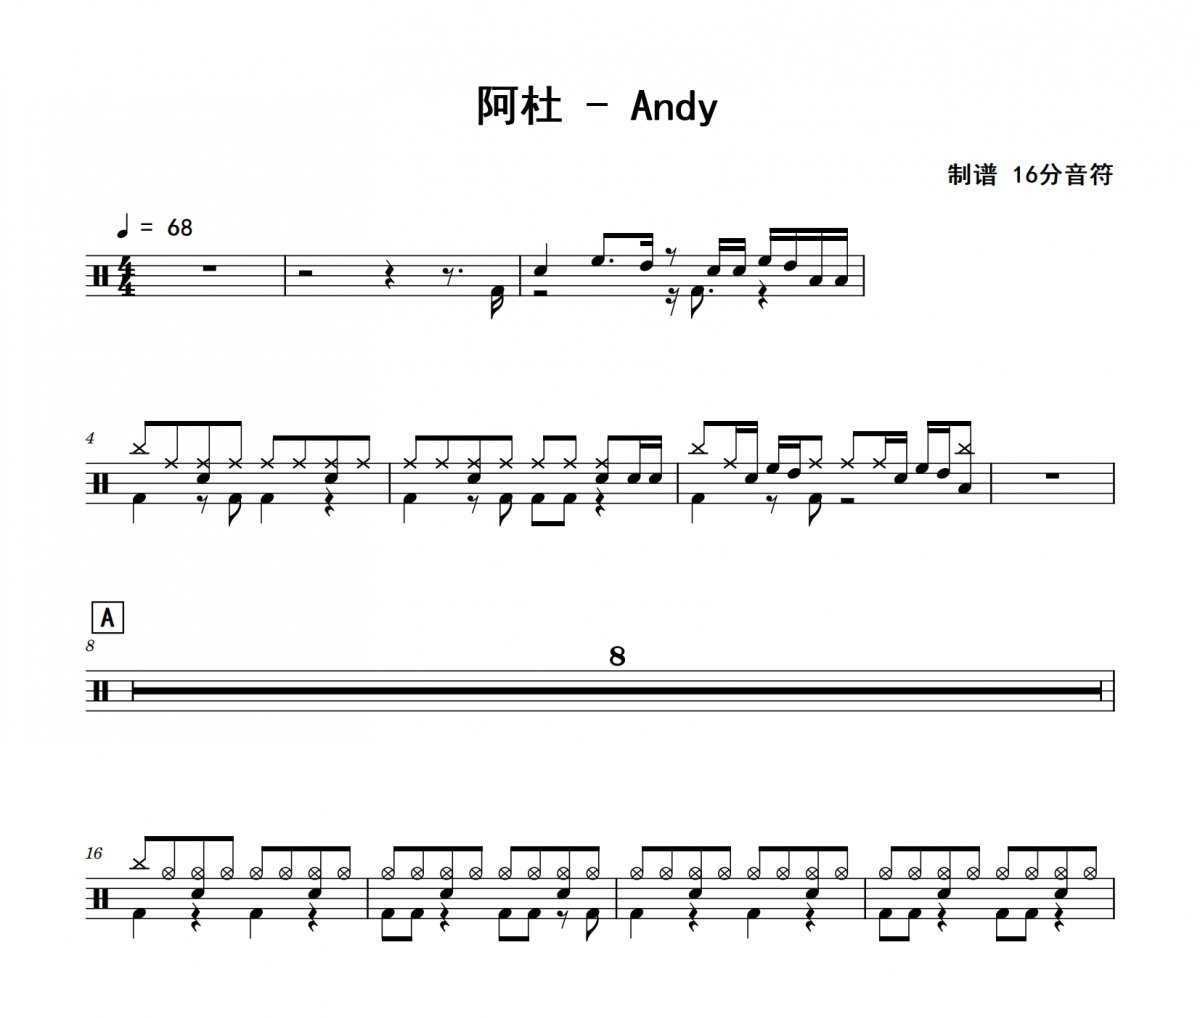 阿杜-Andy架子鼓|爵士鼓|鼓谱 16分音符制谱